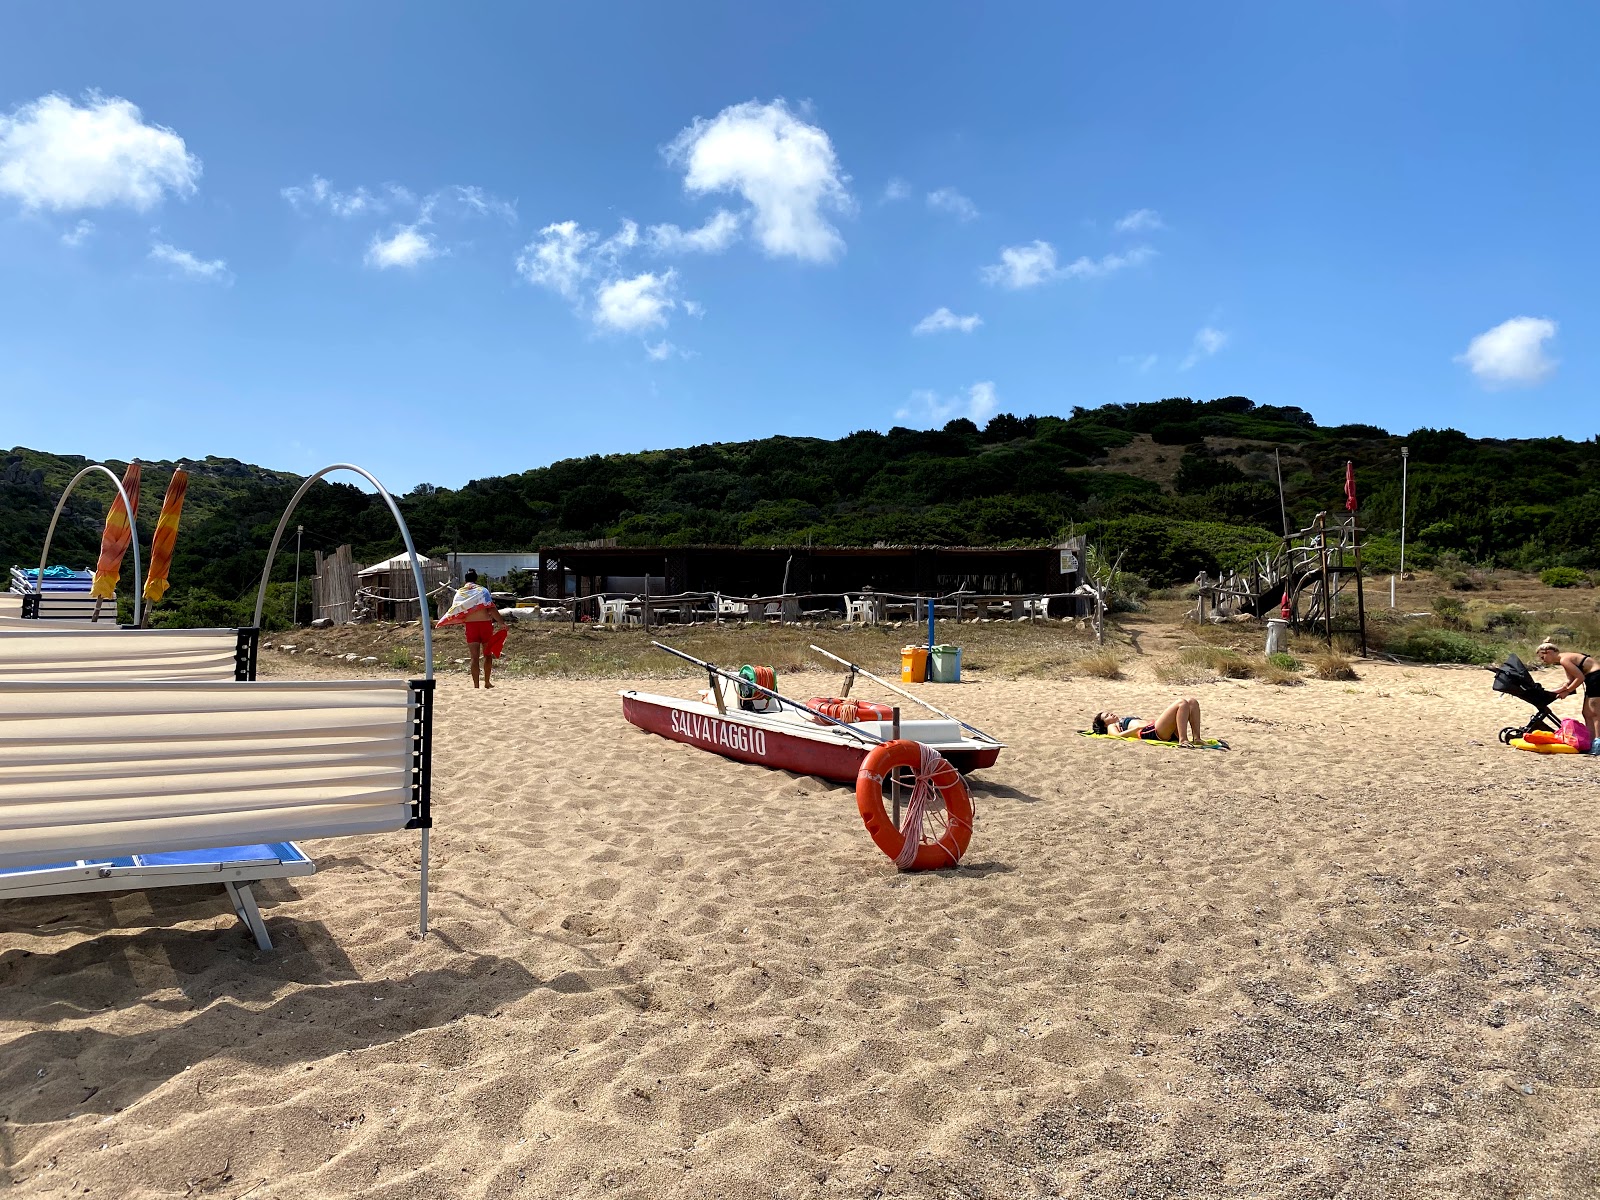 Photo of Spiaggia Porto Quadro located in natural area